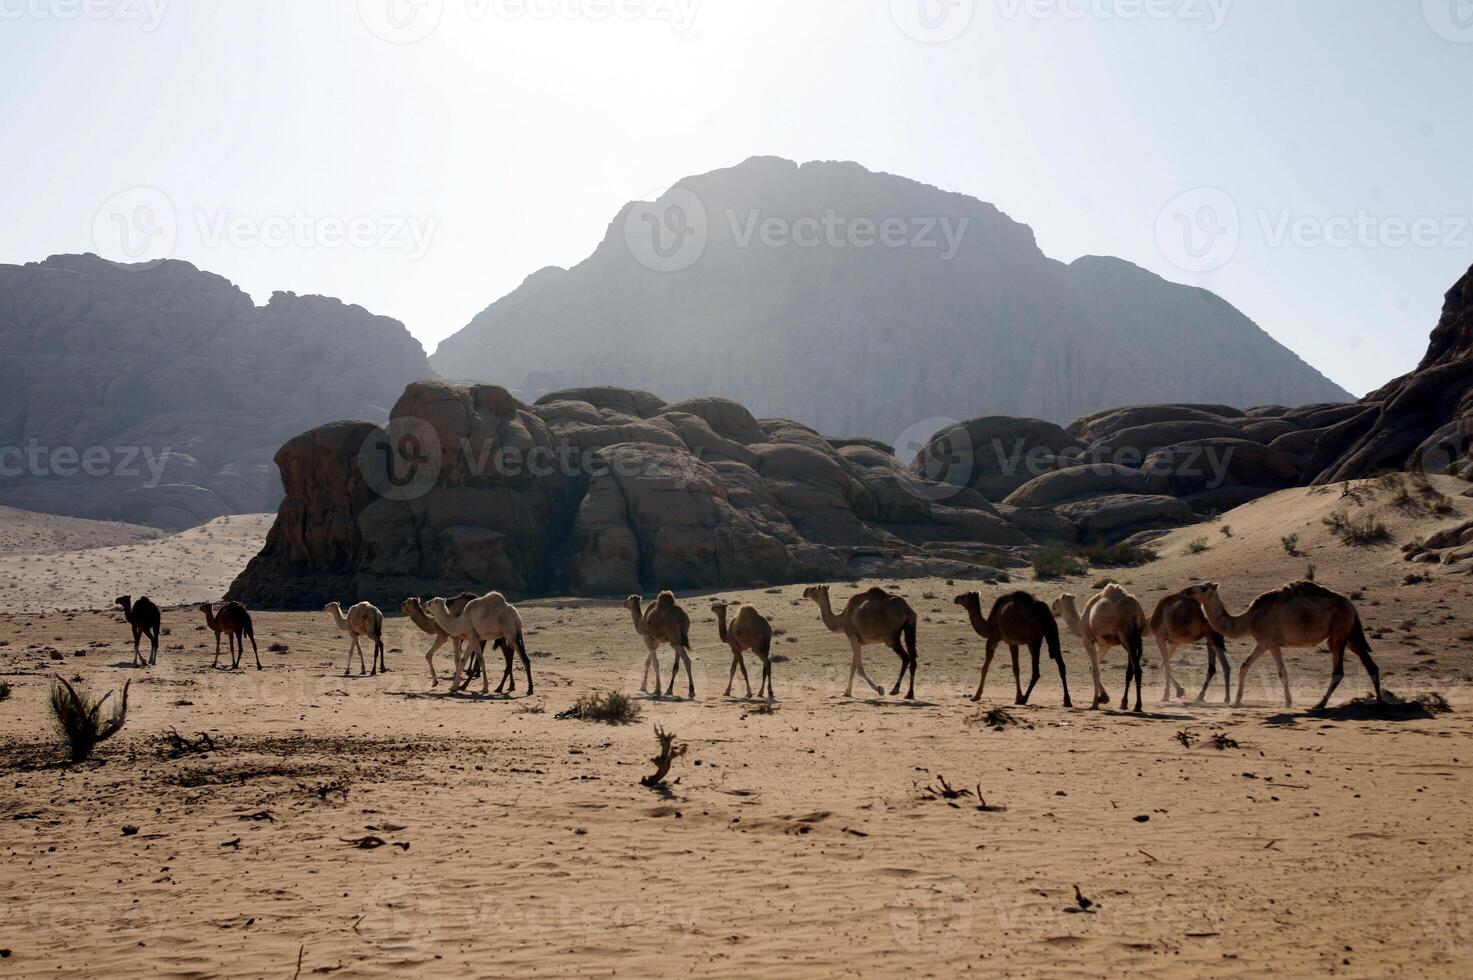 camellos en el Desierto en saudi arabia foto